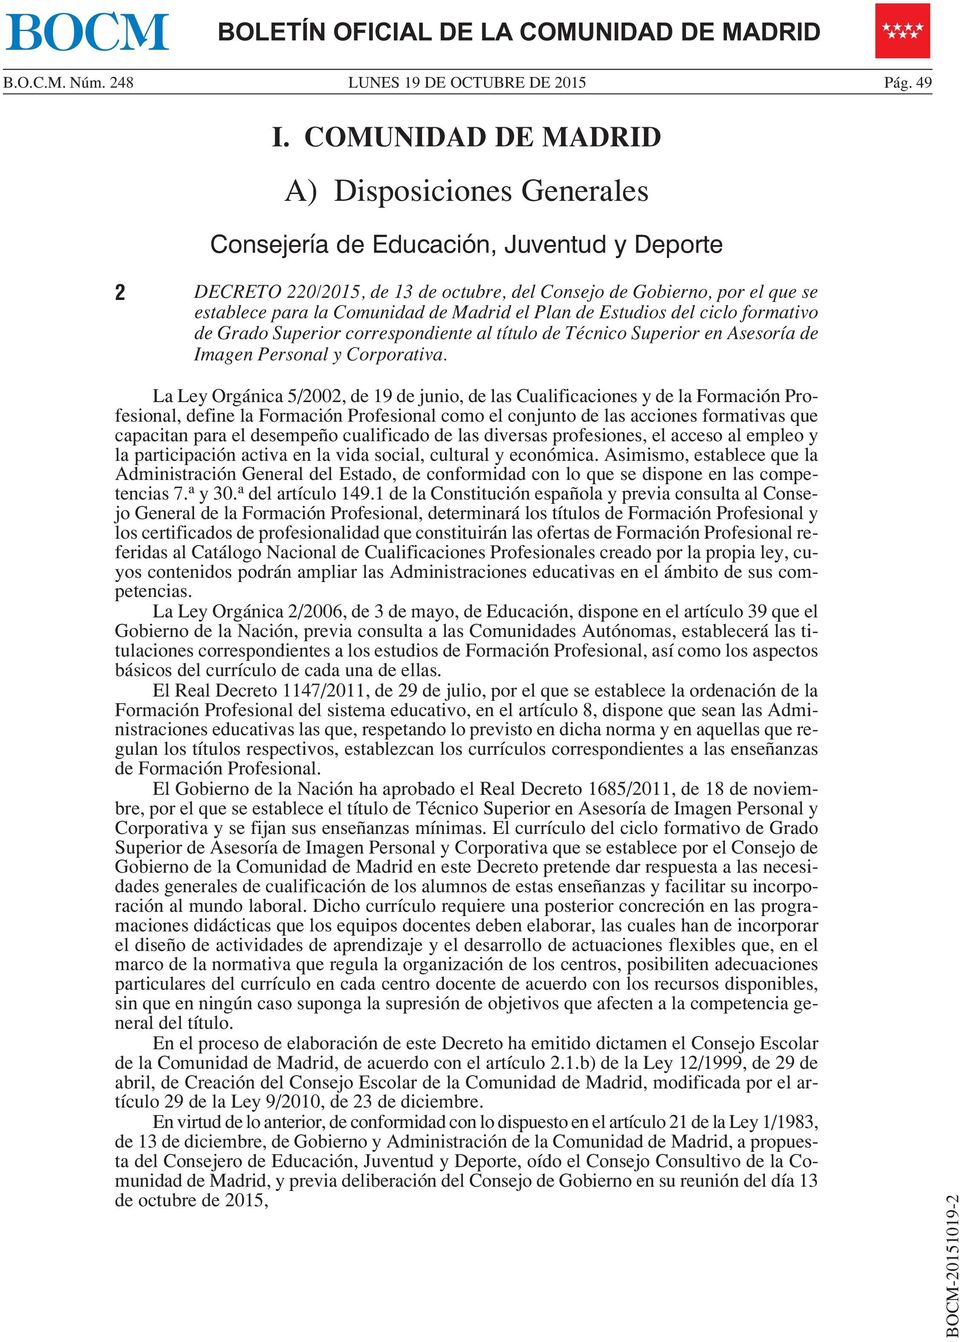 Madrid el Plan de Estudios del ciclo formativo de Grado Superior correspondiente al título de Técnico Superior en Asesoría de Imagen Personal y Corporativa.